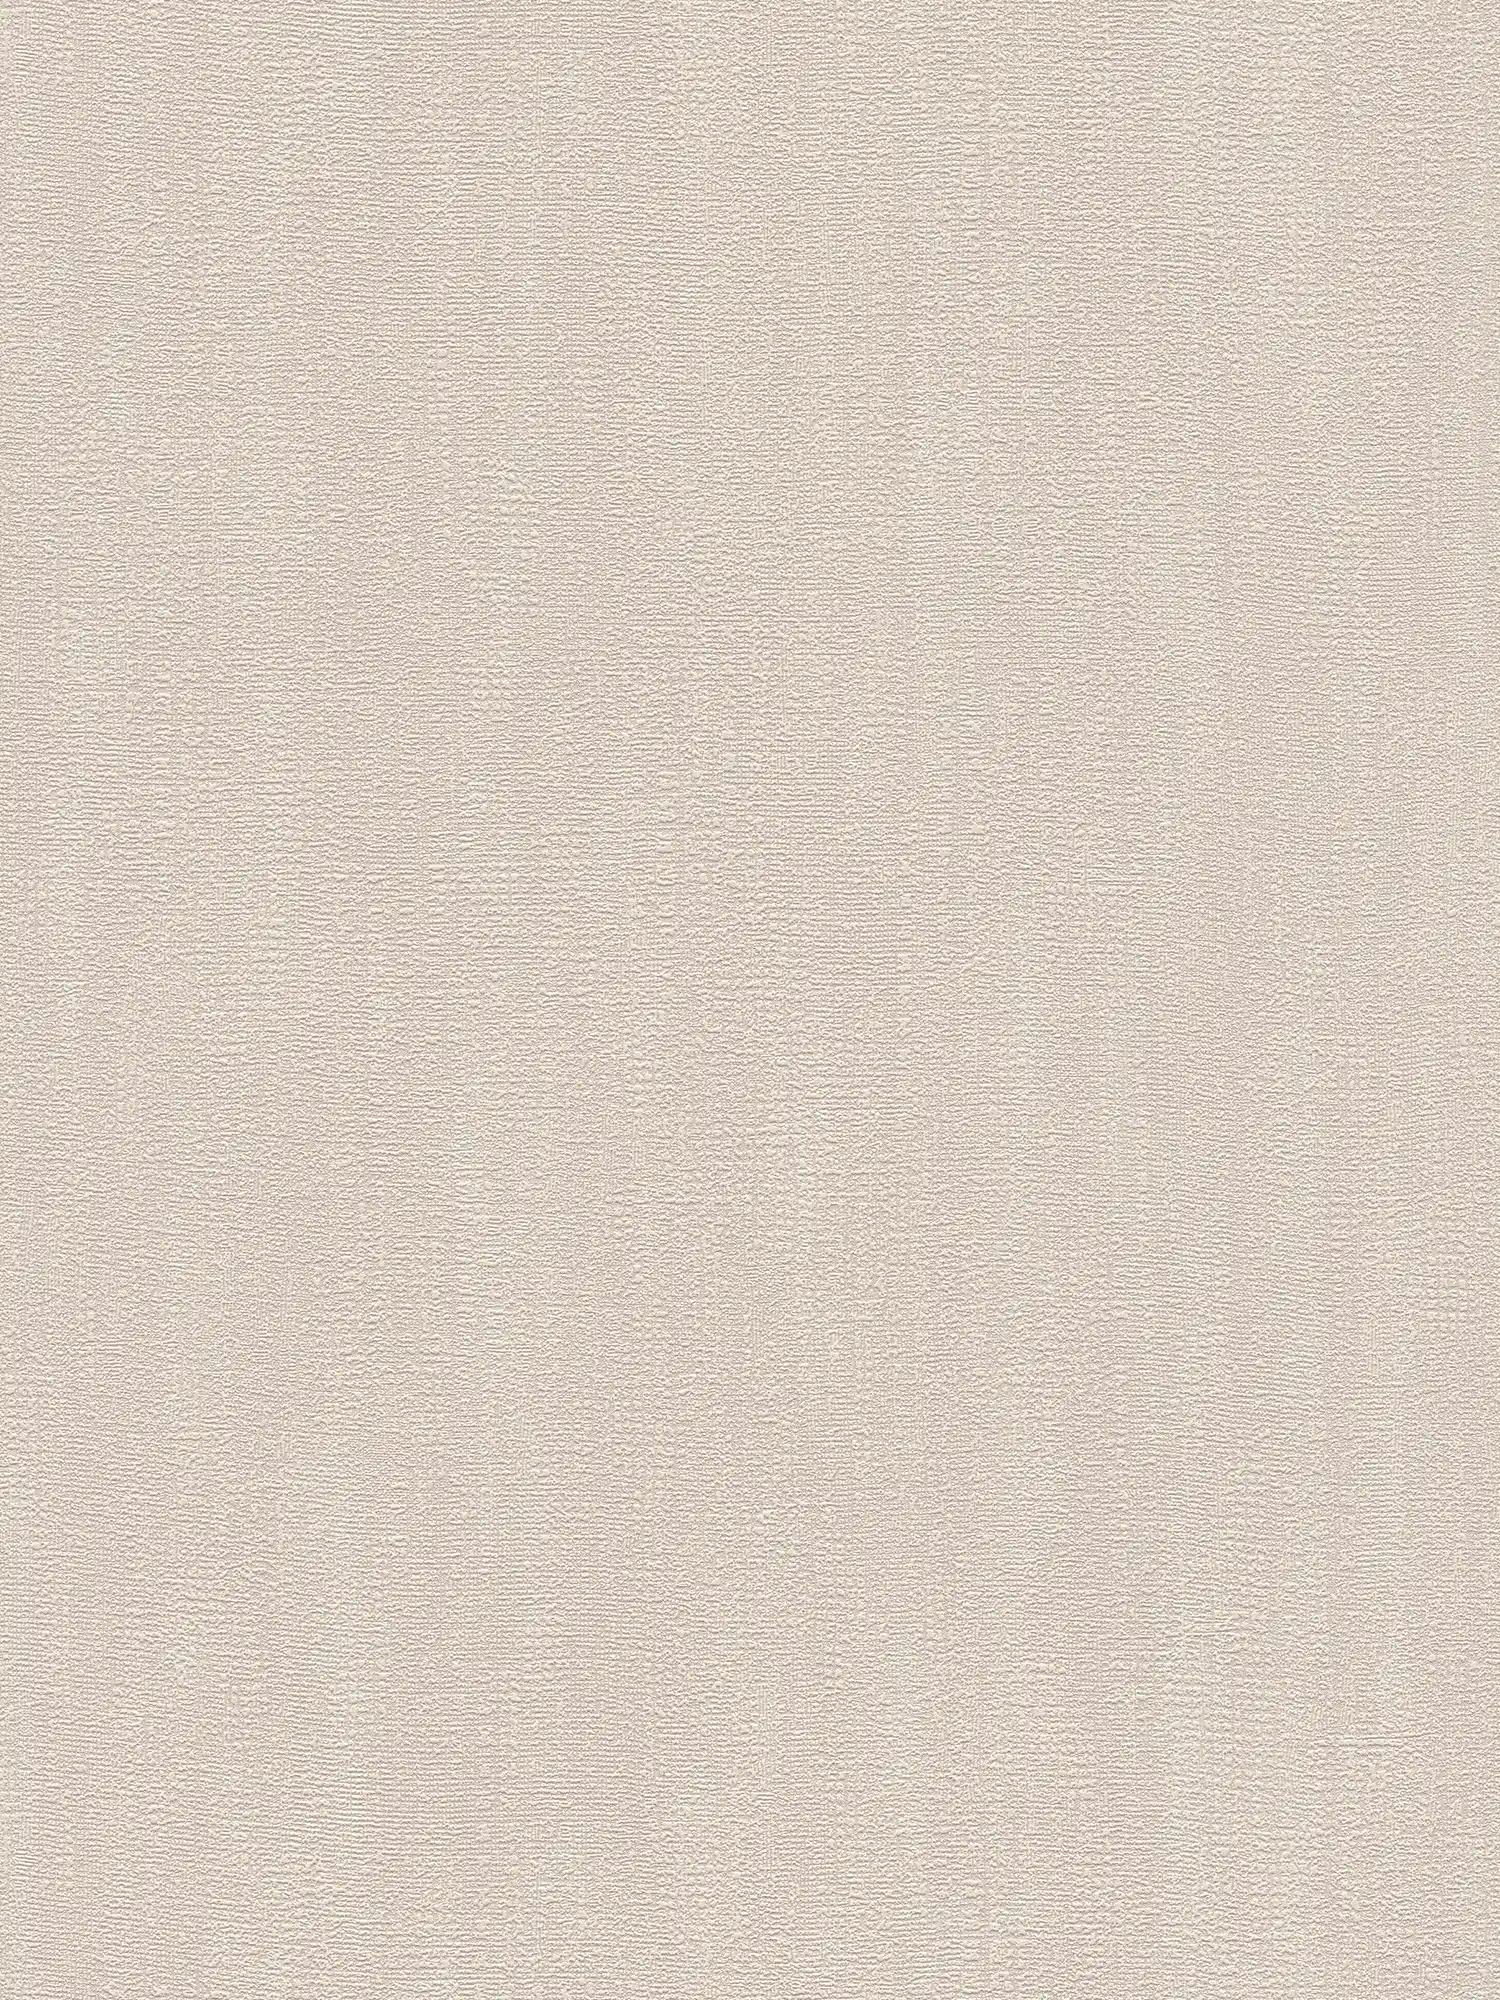 Papier peint structuré avec motif texturé - beige, marron
